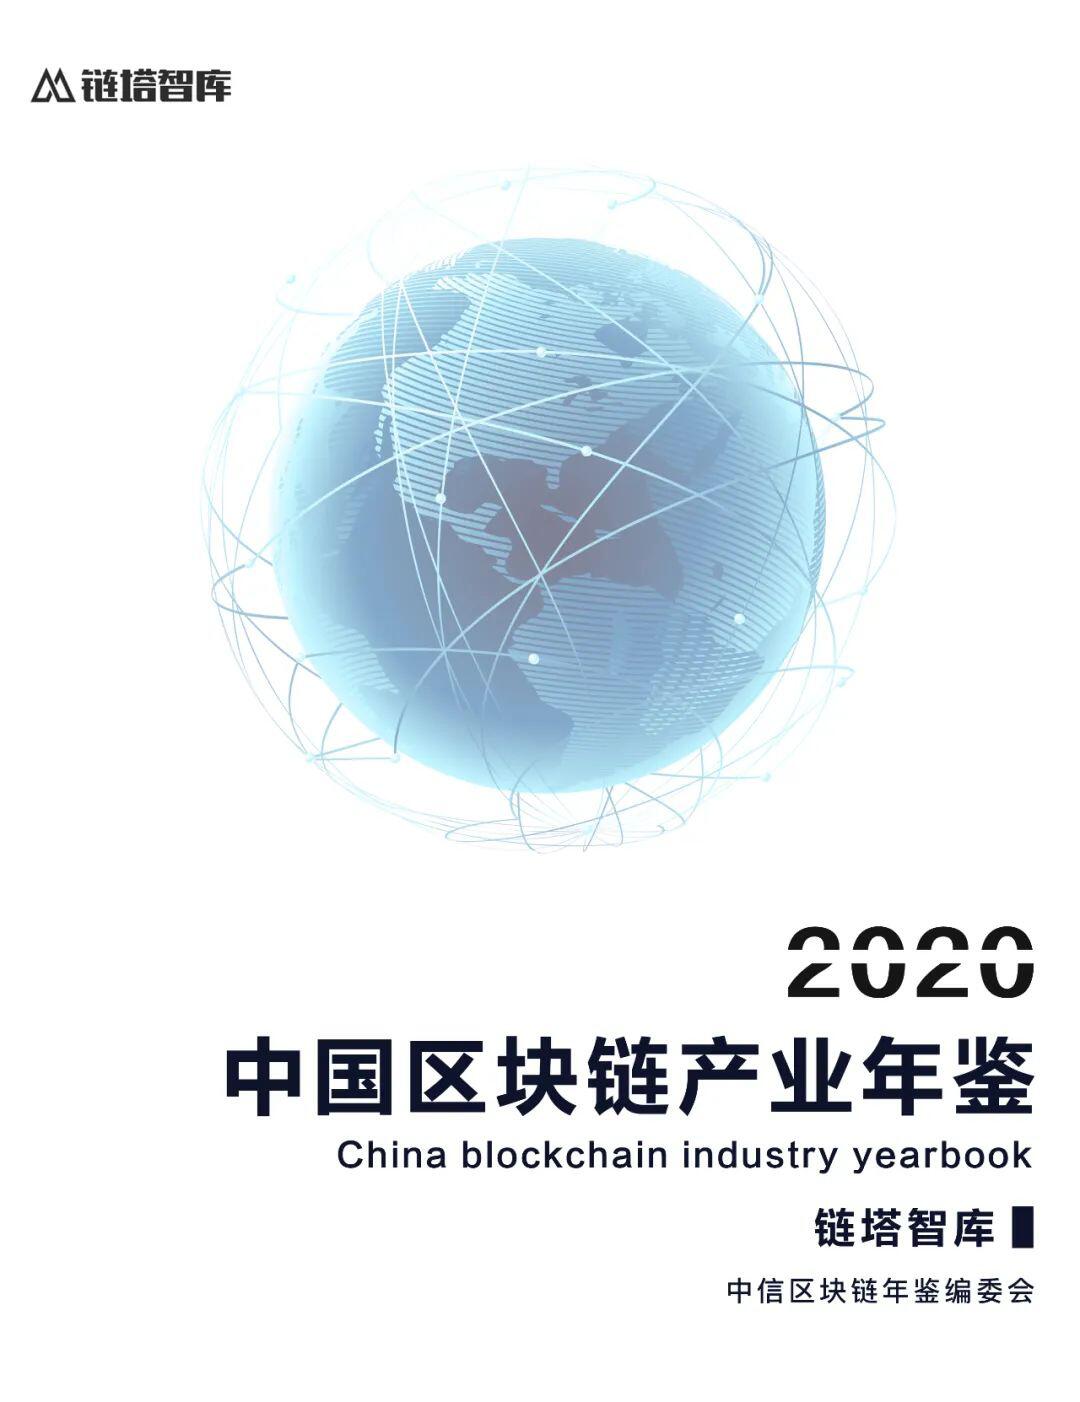 《2020—2021中国区块链产业年鉴》编纂工作启动